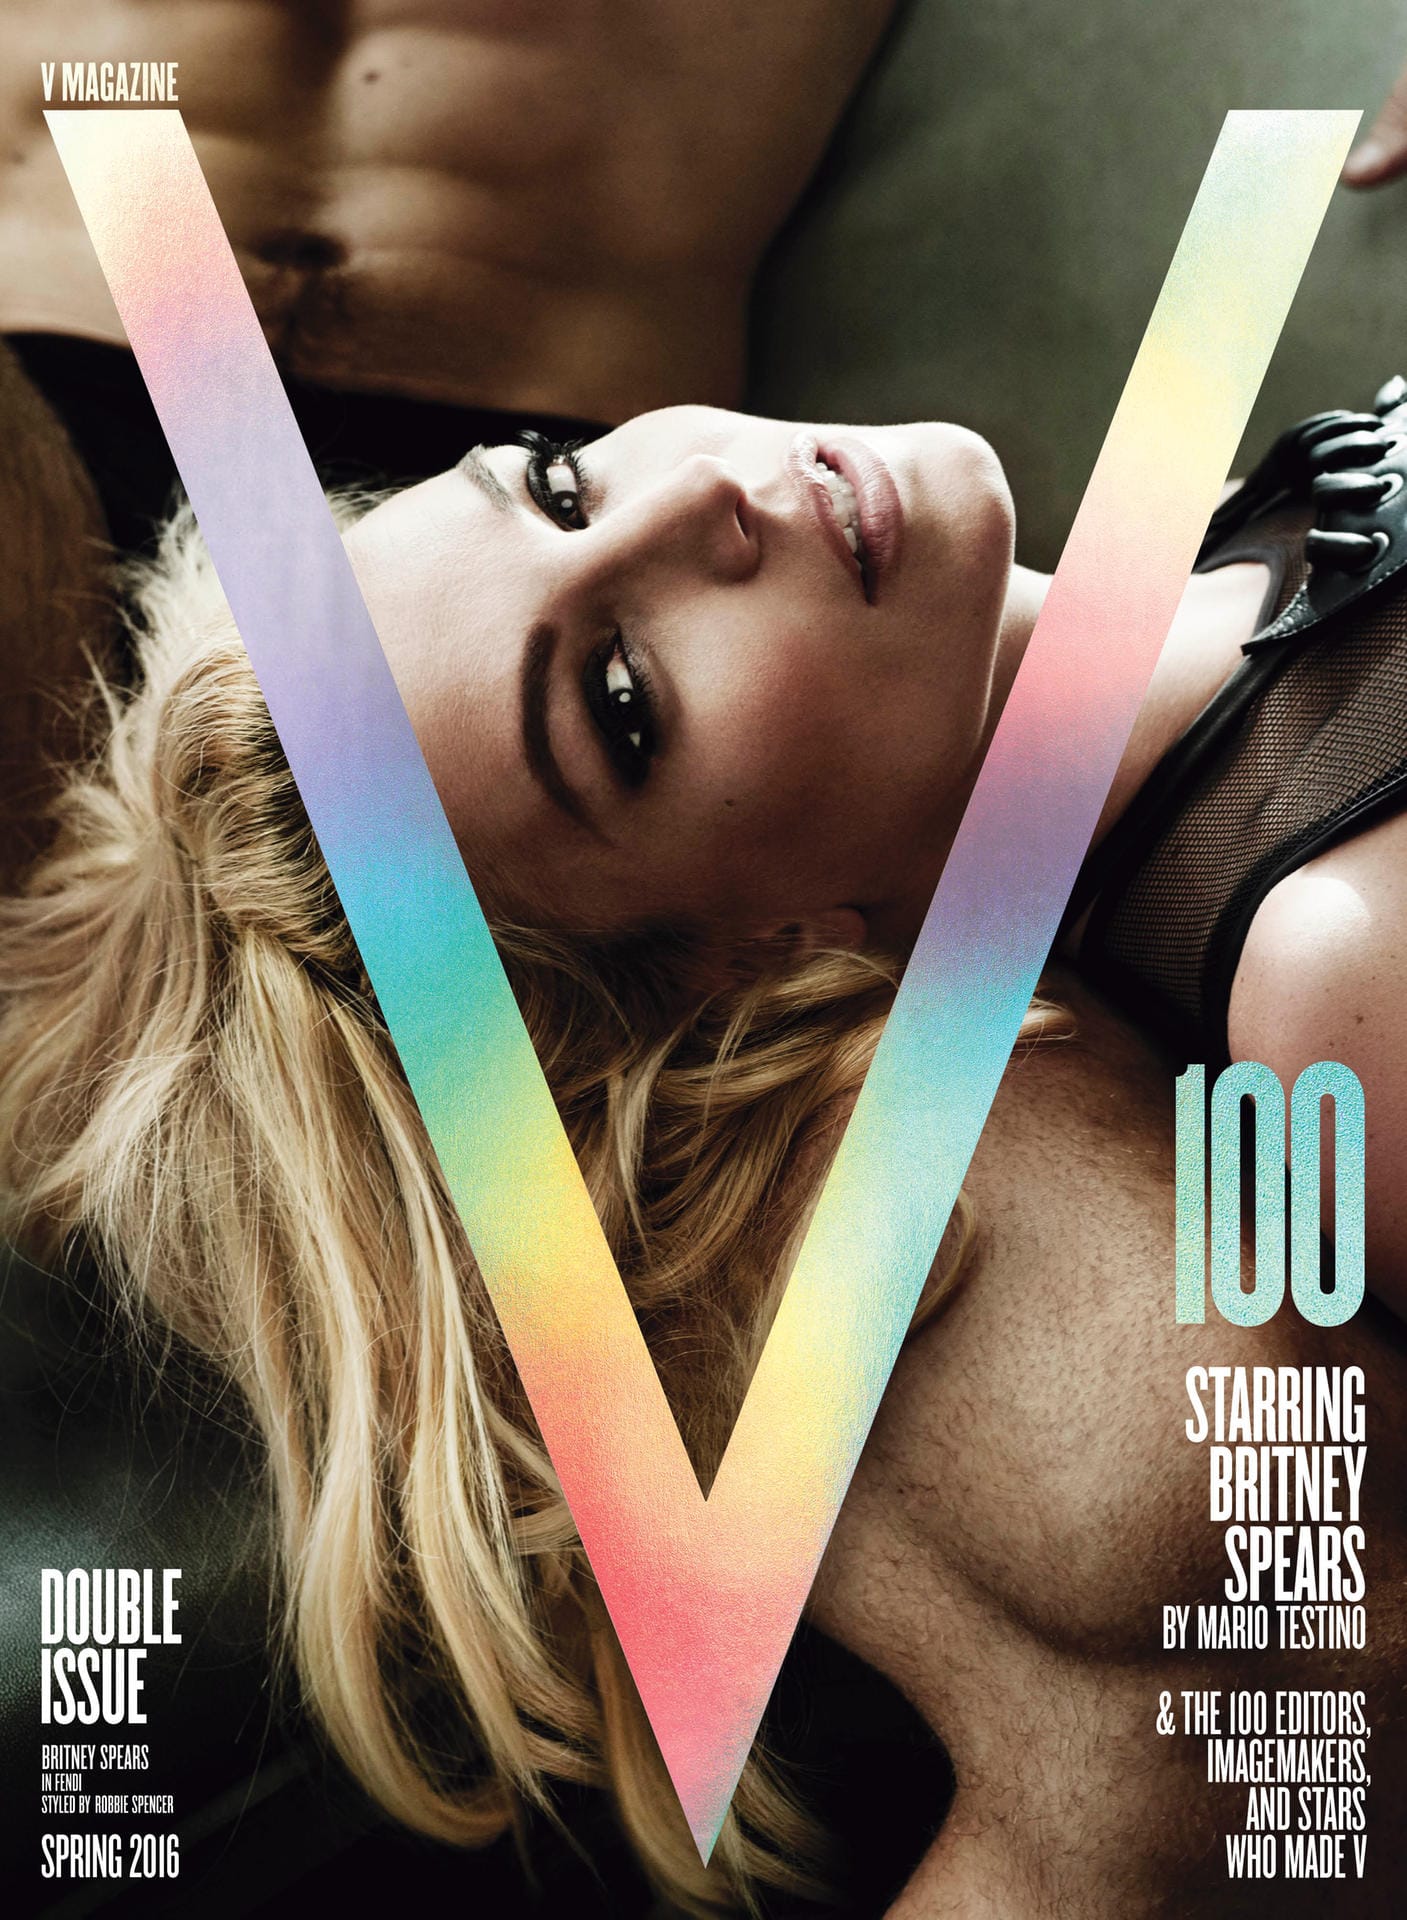 Auch auf der zweiten Version des Covers der Jubiläumsausgabe des Heftes wirkt Spears deutlich verjüngt: das Gesicht etwas schmaler als man es von Spears kennt, die Wangen markanter, die Nase etwas spitzer und der Schmollmund deutlich ausgeprägter.